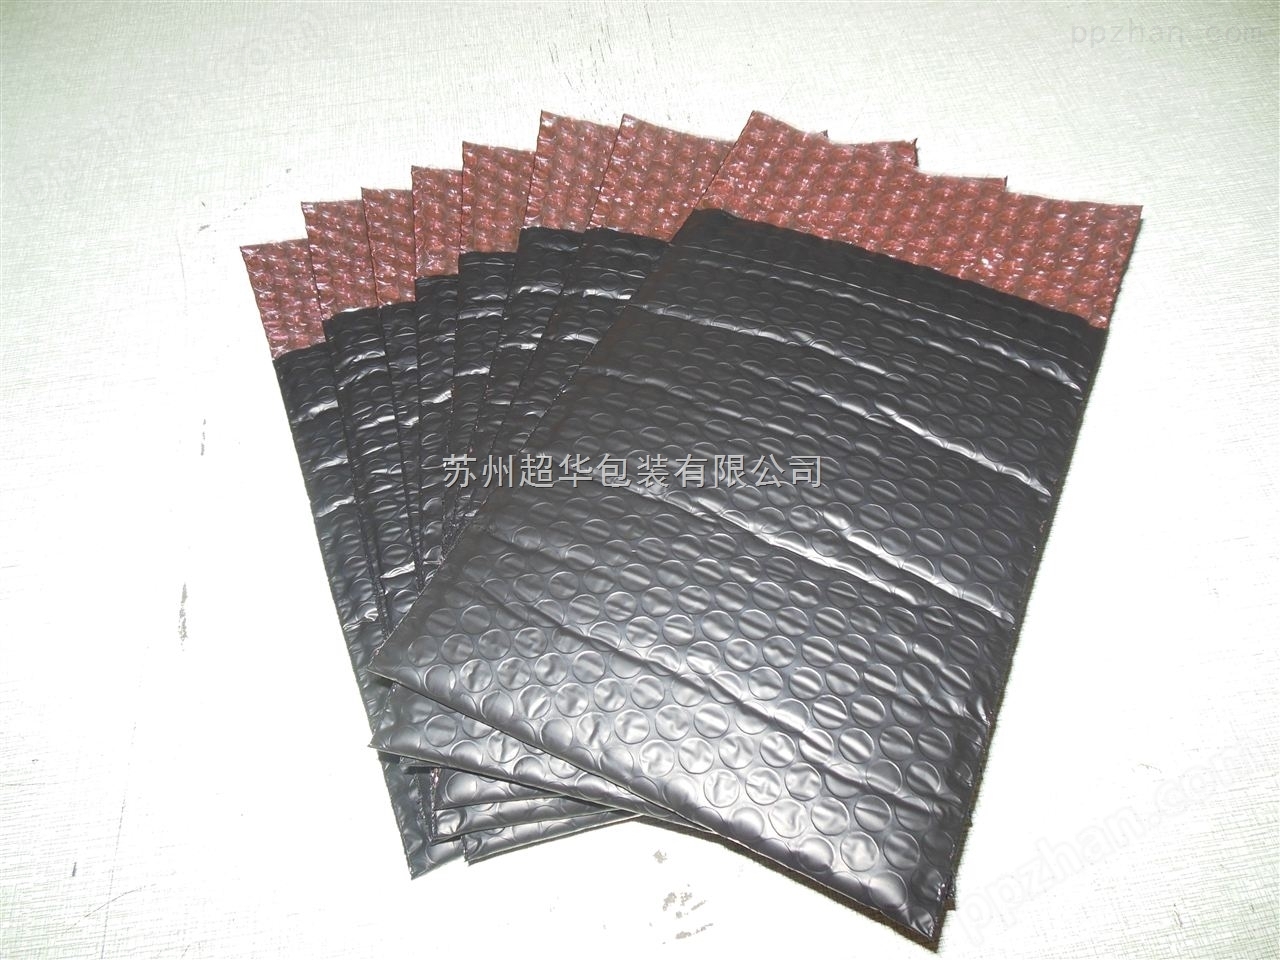 黑色导电膜复合气泡膜 厂家常年加工生产 卷材袋子均有销售